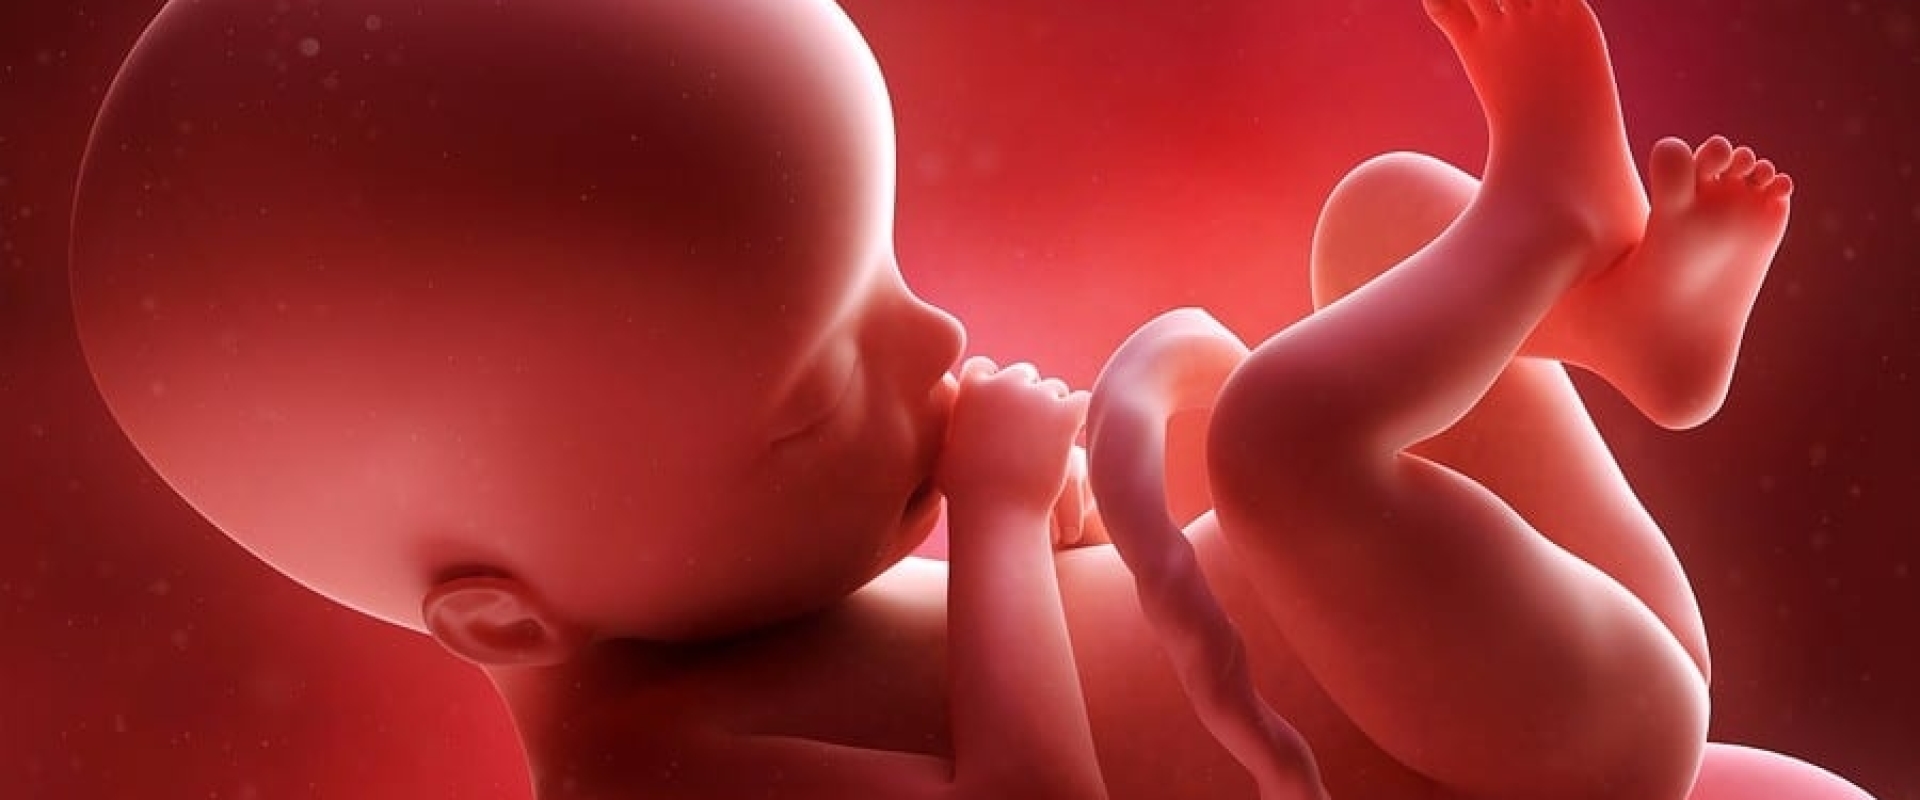 Je ongeboren kindje vergiftigen, is dat nou handig of niet?